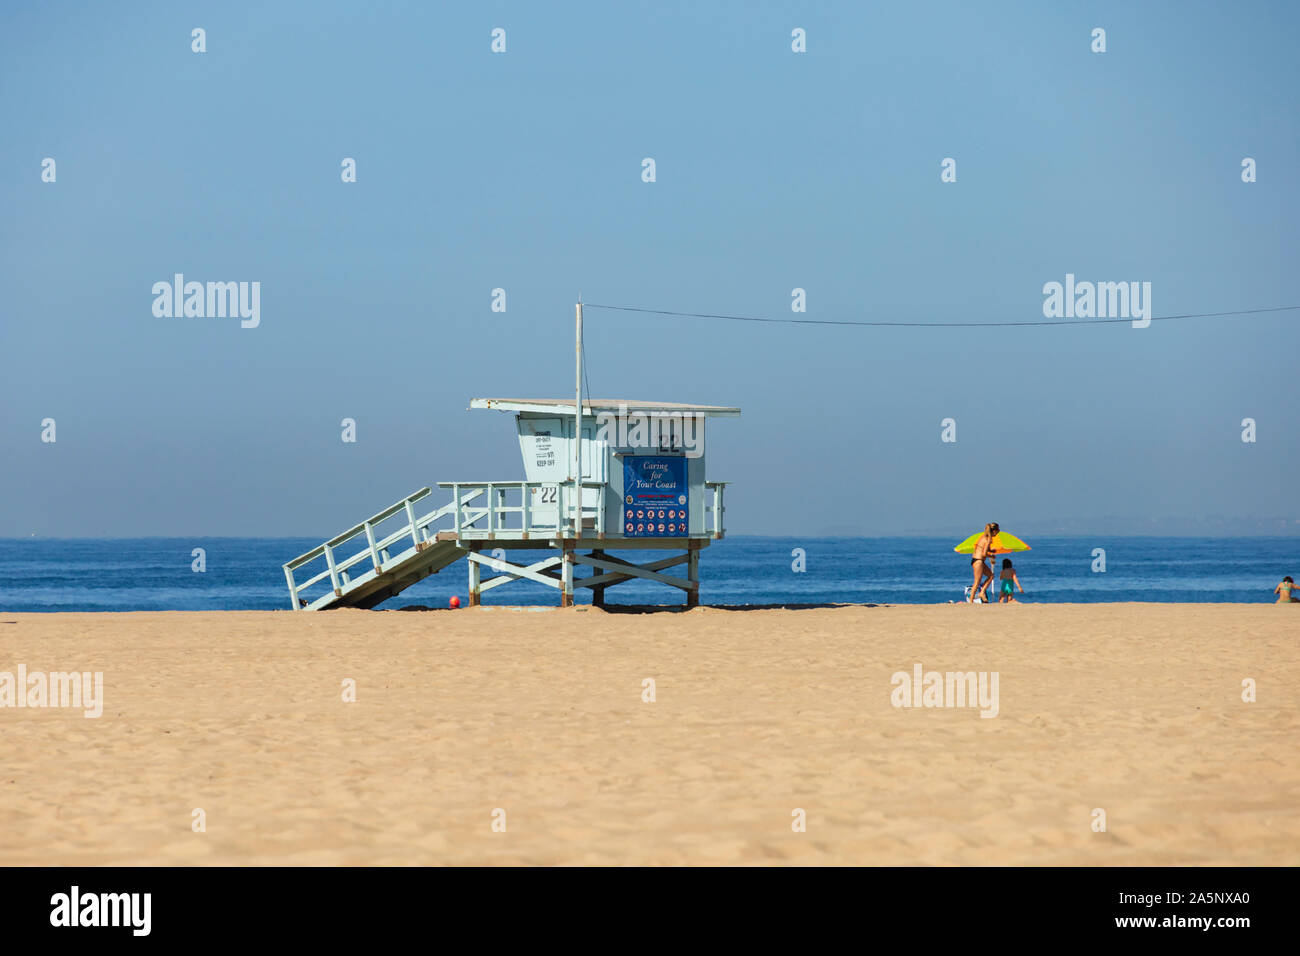 Rettungsschwimmturm am Strand von Santa Monica, Kalifornien, Vereinigte Staaten von Amerika. USA. Oktober 2019 Stockfoto